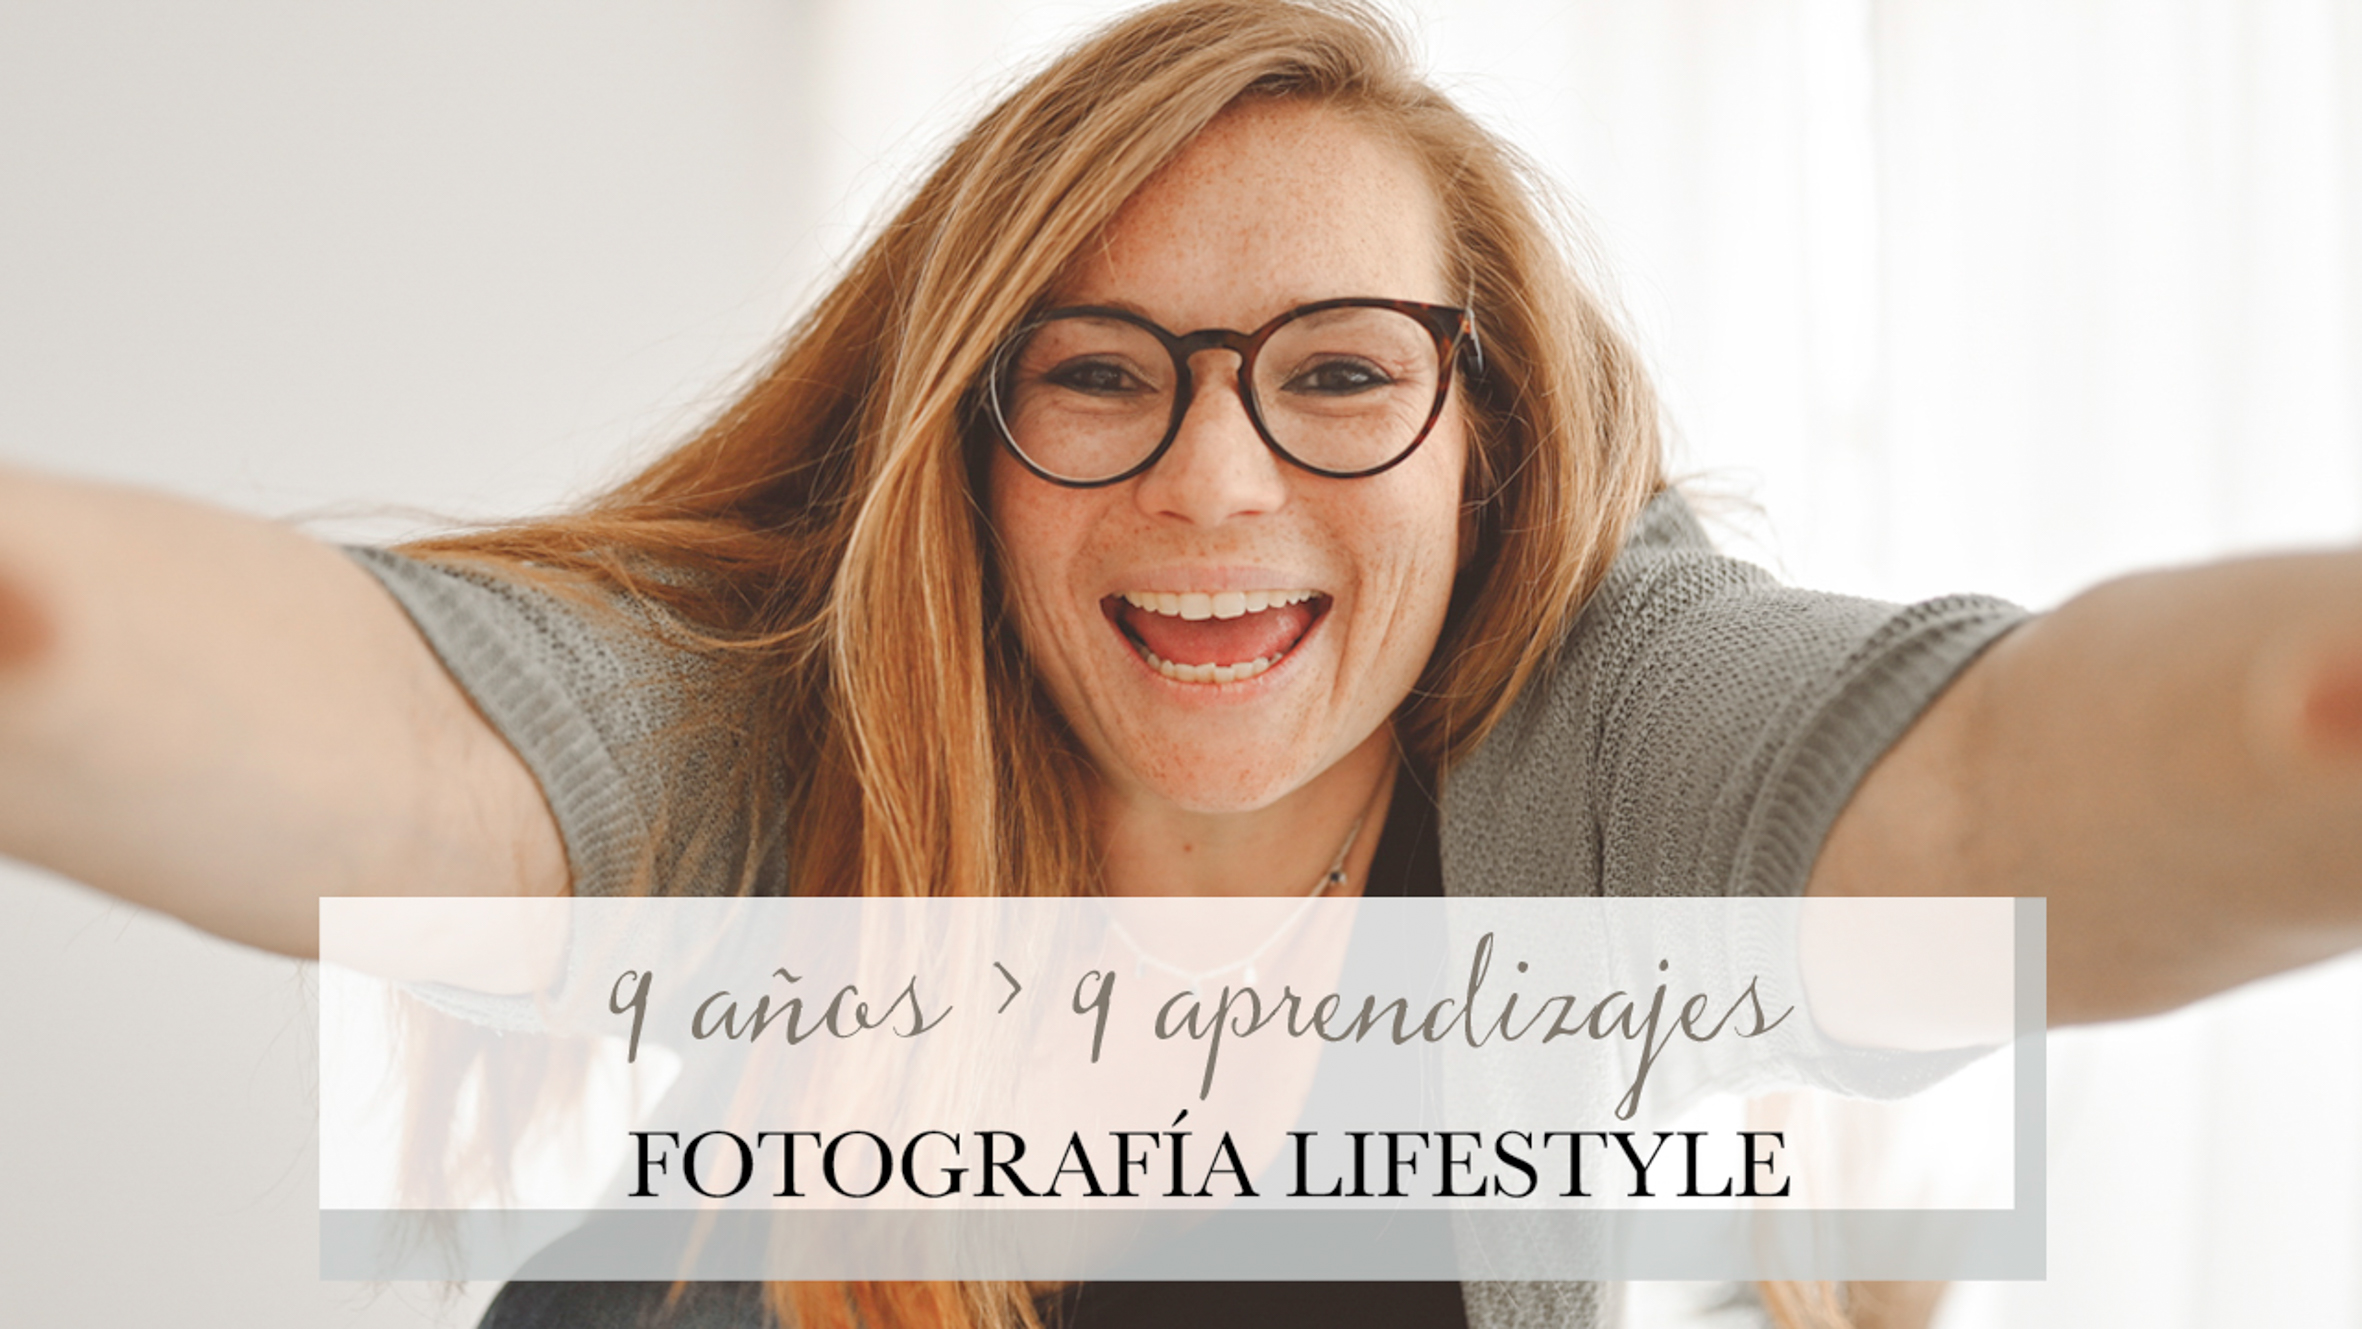 9 años y 9 aprendizajes de fotografía lifestyle